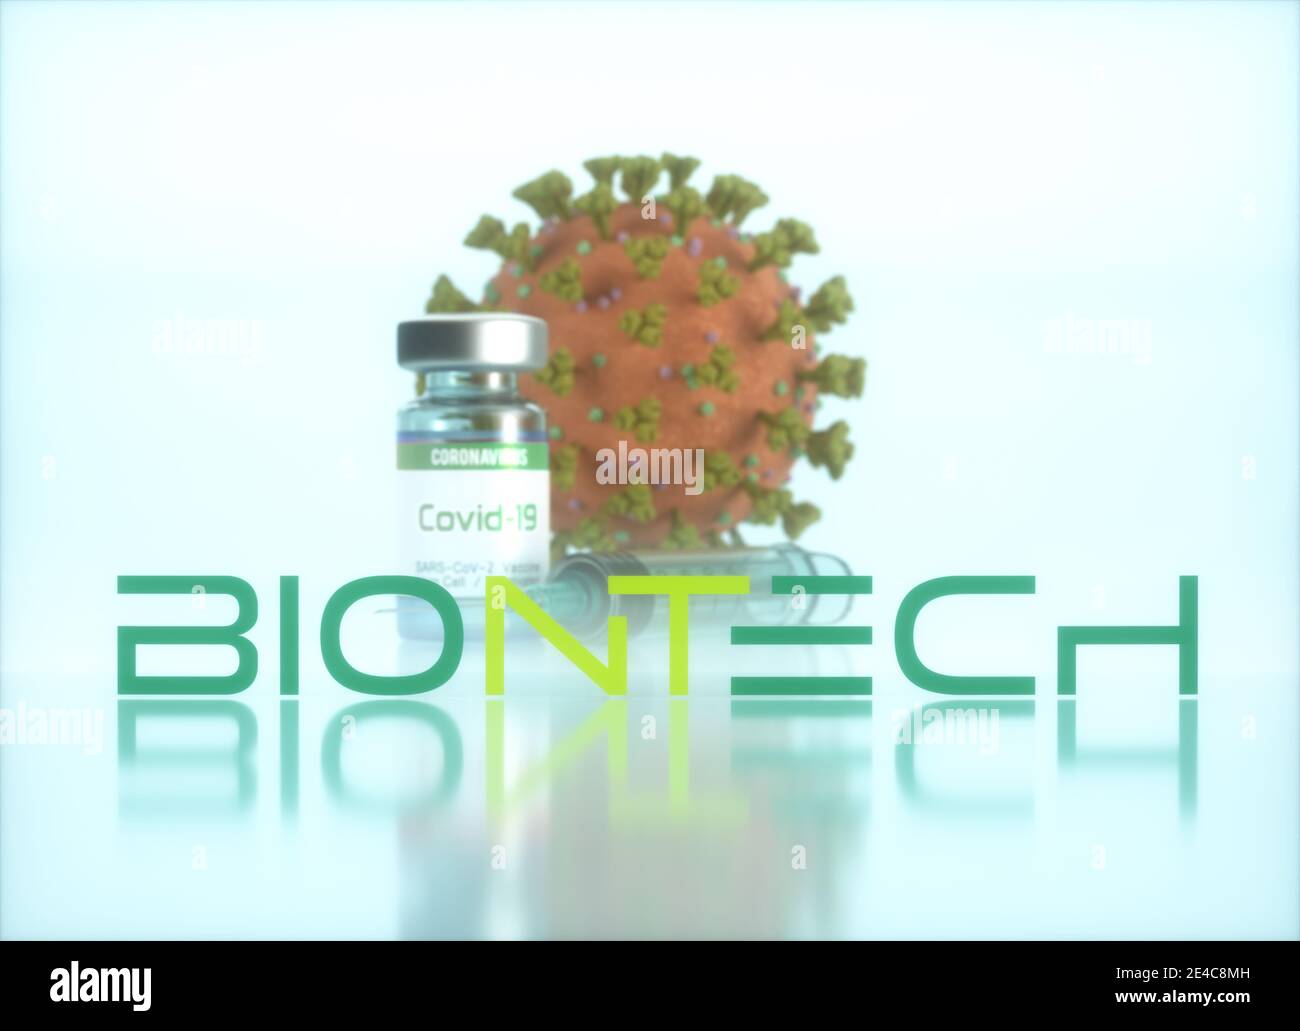 Biontech Vaccine, image conceptuelle pour la découverte d'un vaccin contre le Covid-19, le coronavirus, le 2019-nCoV, le COV-SRAS-2. Illustration 3D. Banque D'Images